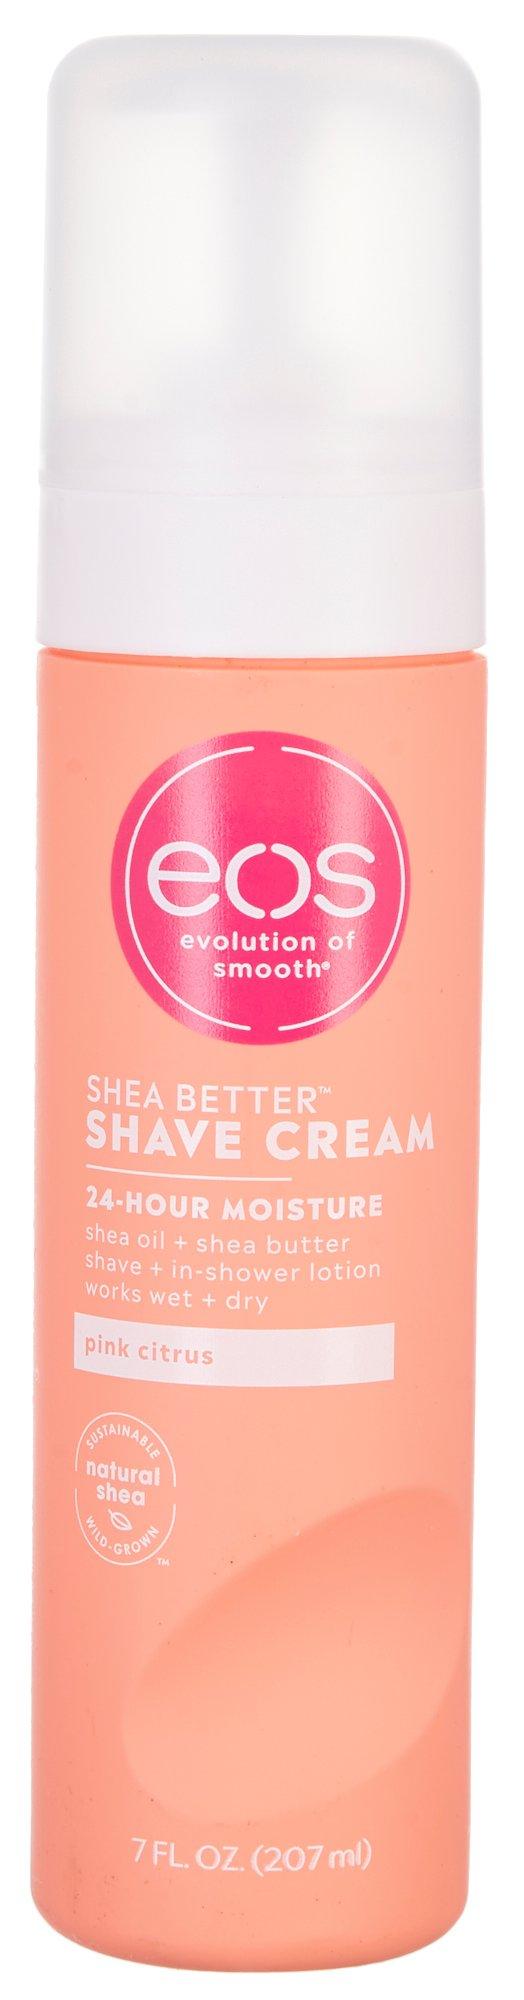 EOS Shea Better Pink Citrus 24-Hour Moisture Shave